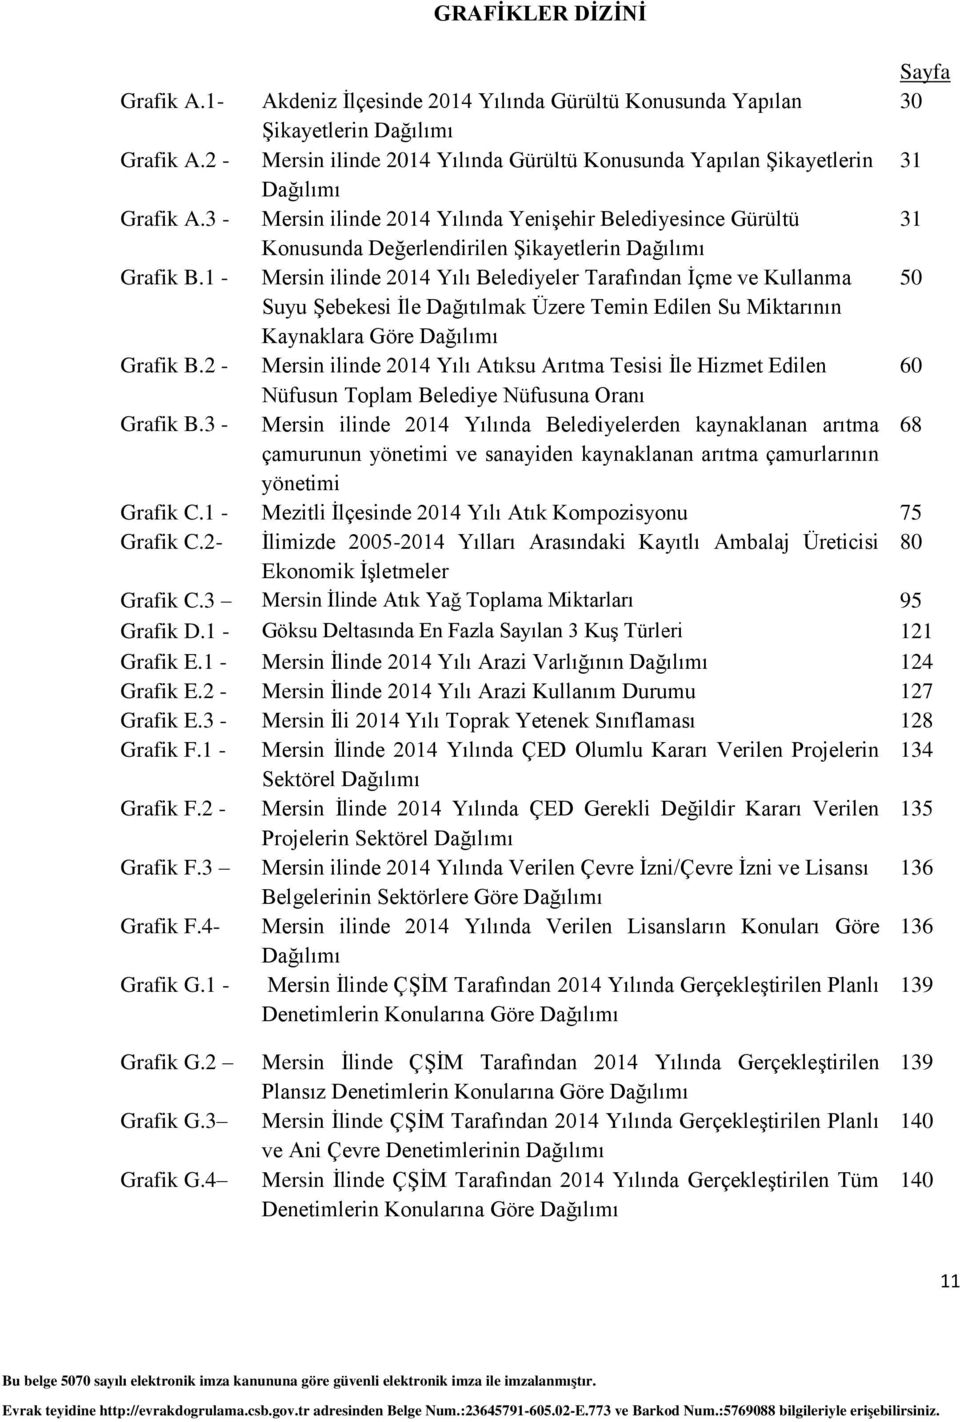 3 - Mersin ilinde 2014 Yılında Yenişehir Belediyesince Gürültü 31 Konusunda Değerlendirilen Şikayetlerin Dağılımı Grafik B.